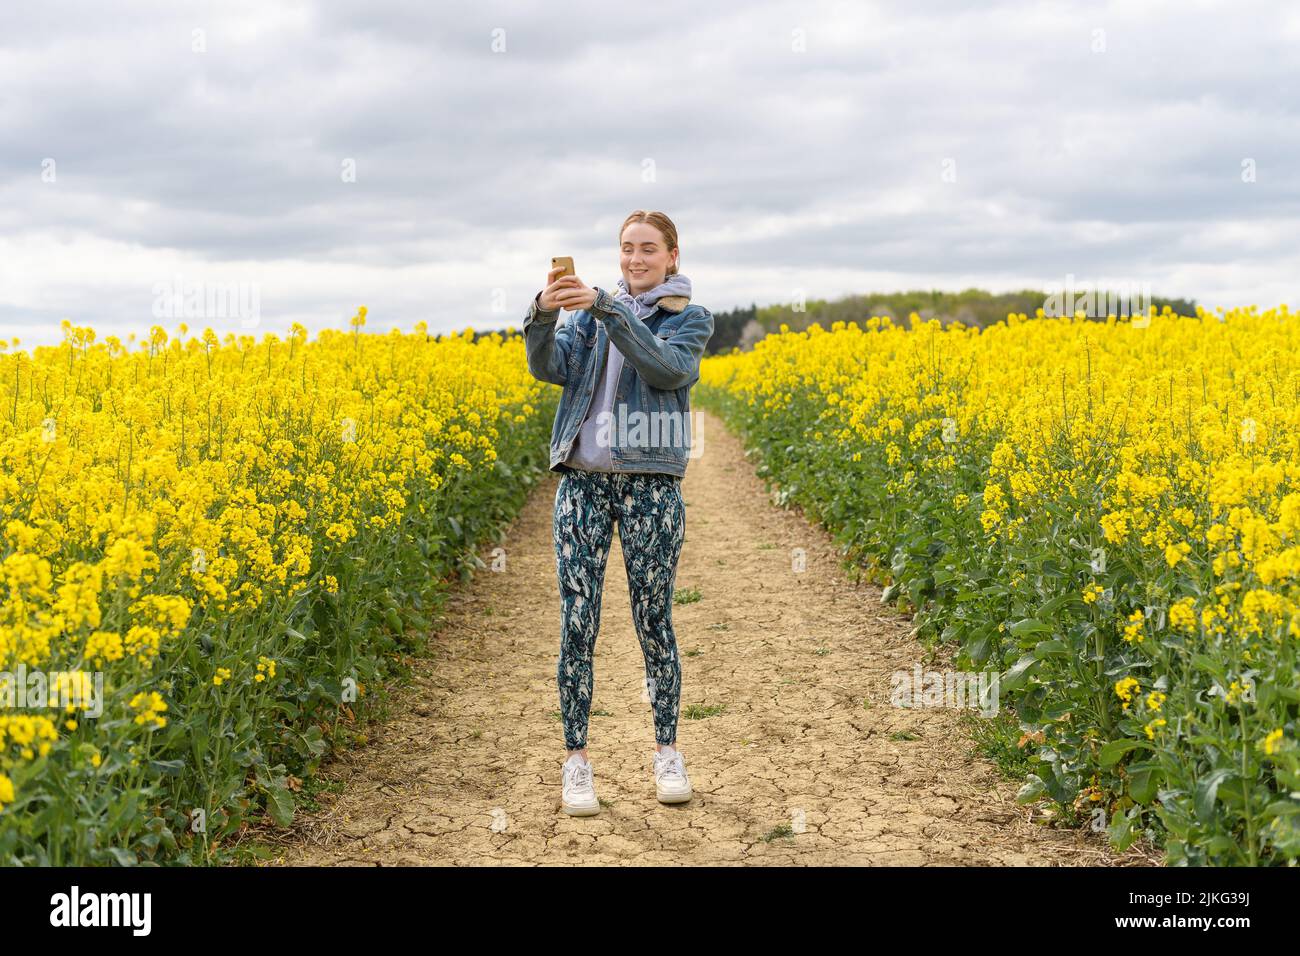 Ein junges kaukasisches Mädchen, das Fotos vom weißen Senffeld gemacht hat Stockfoto